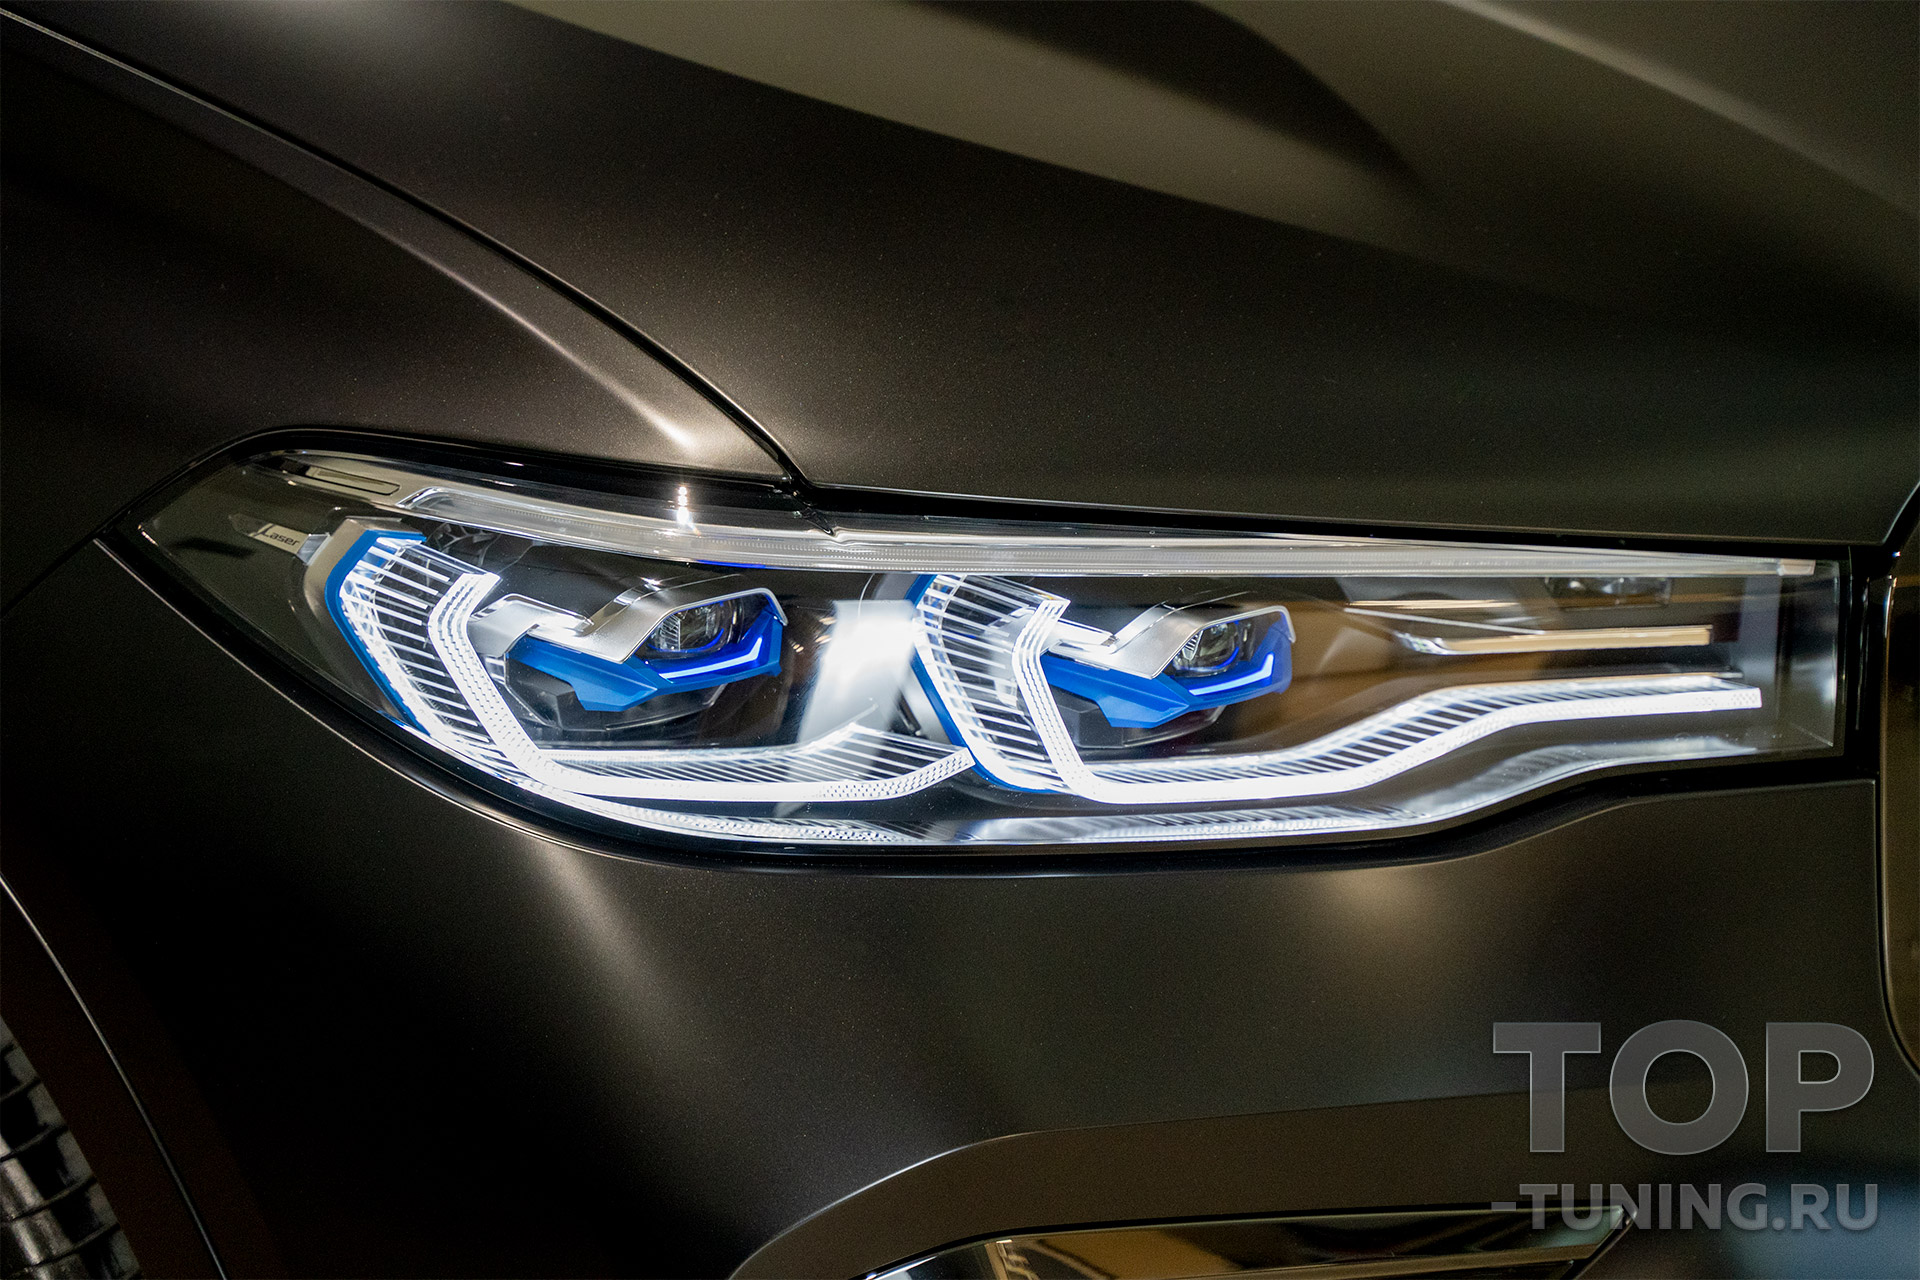 BMW X7 – Пленка на фары оклейка – Максимальный уровень защиты оптики от сколов, царапин и песка